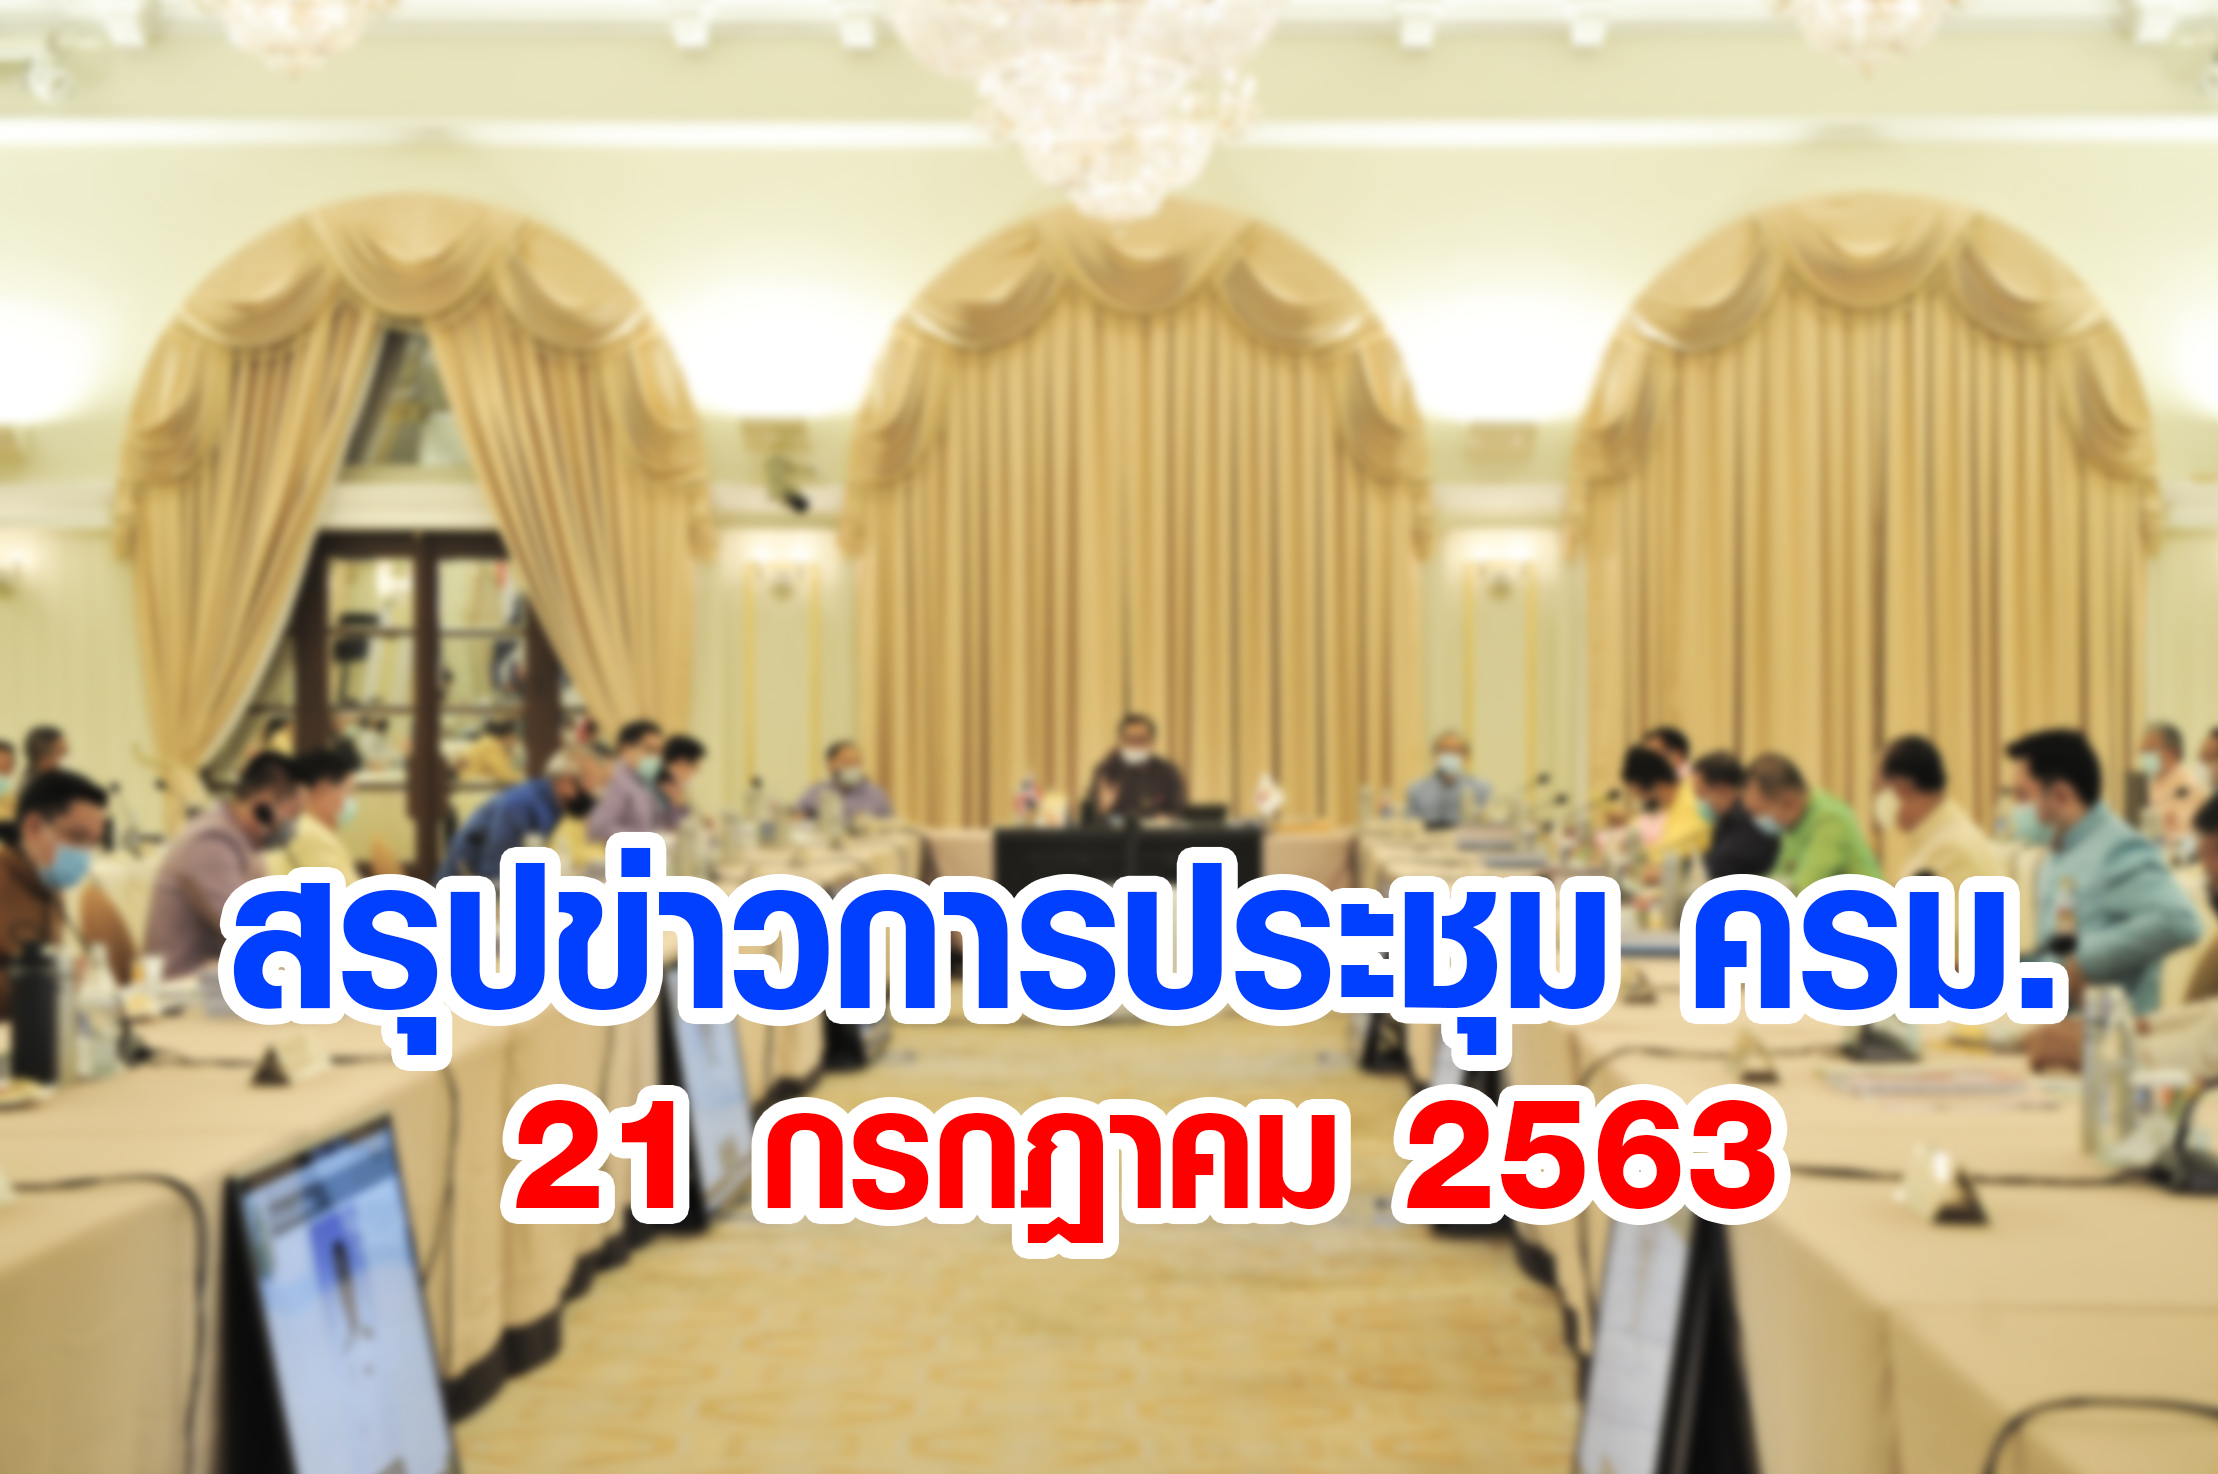 สรุปข่าวการประชุมคณะรัฐมนตรี 21 ก.ค. 2563